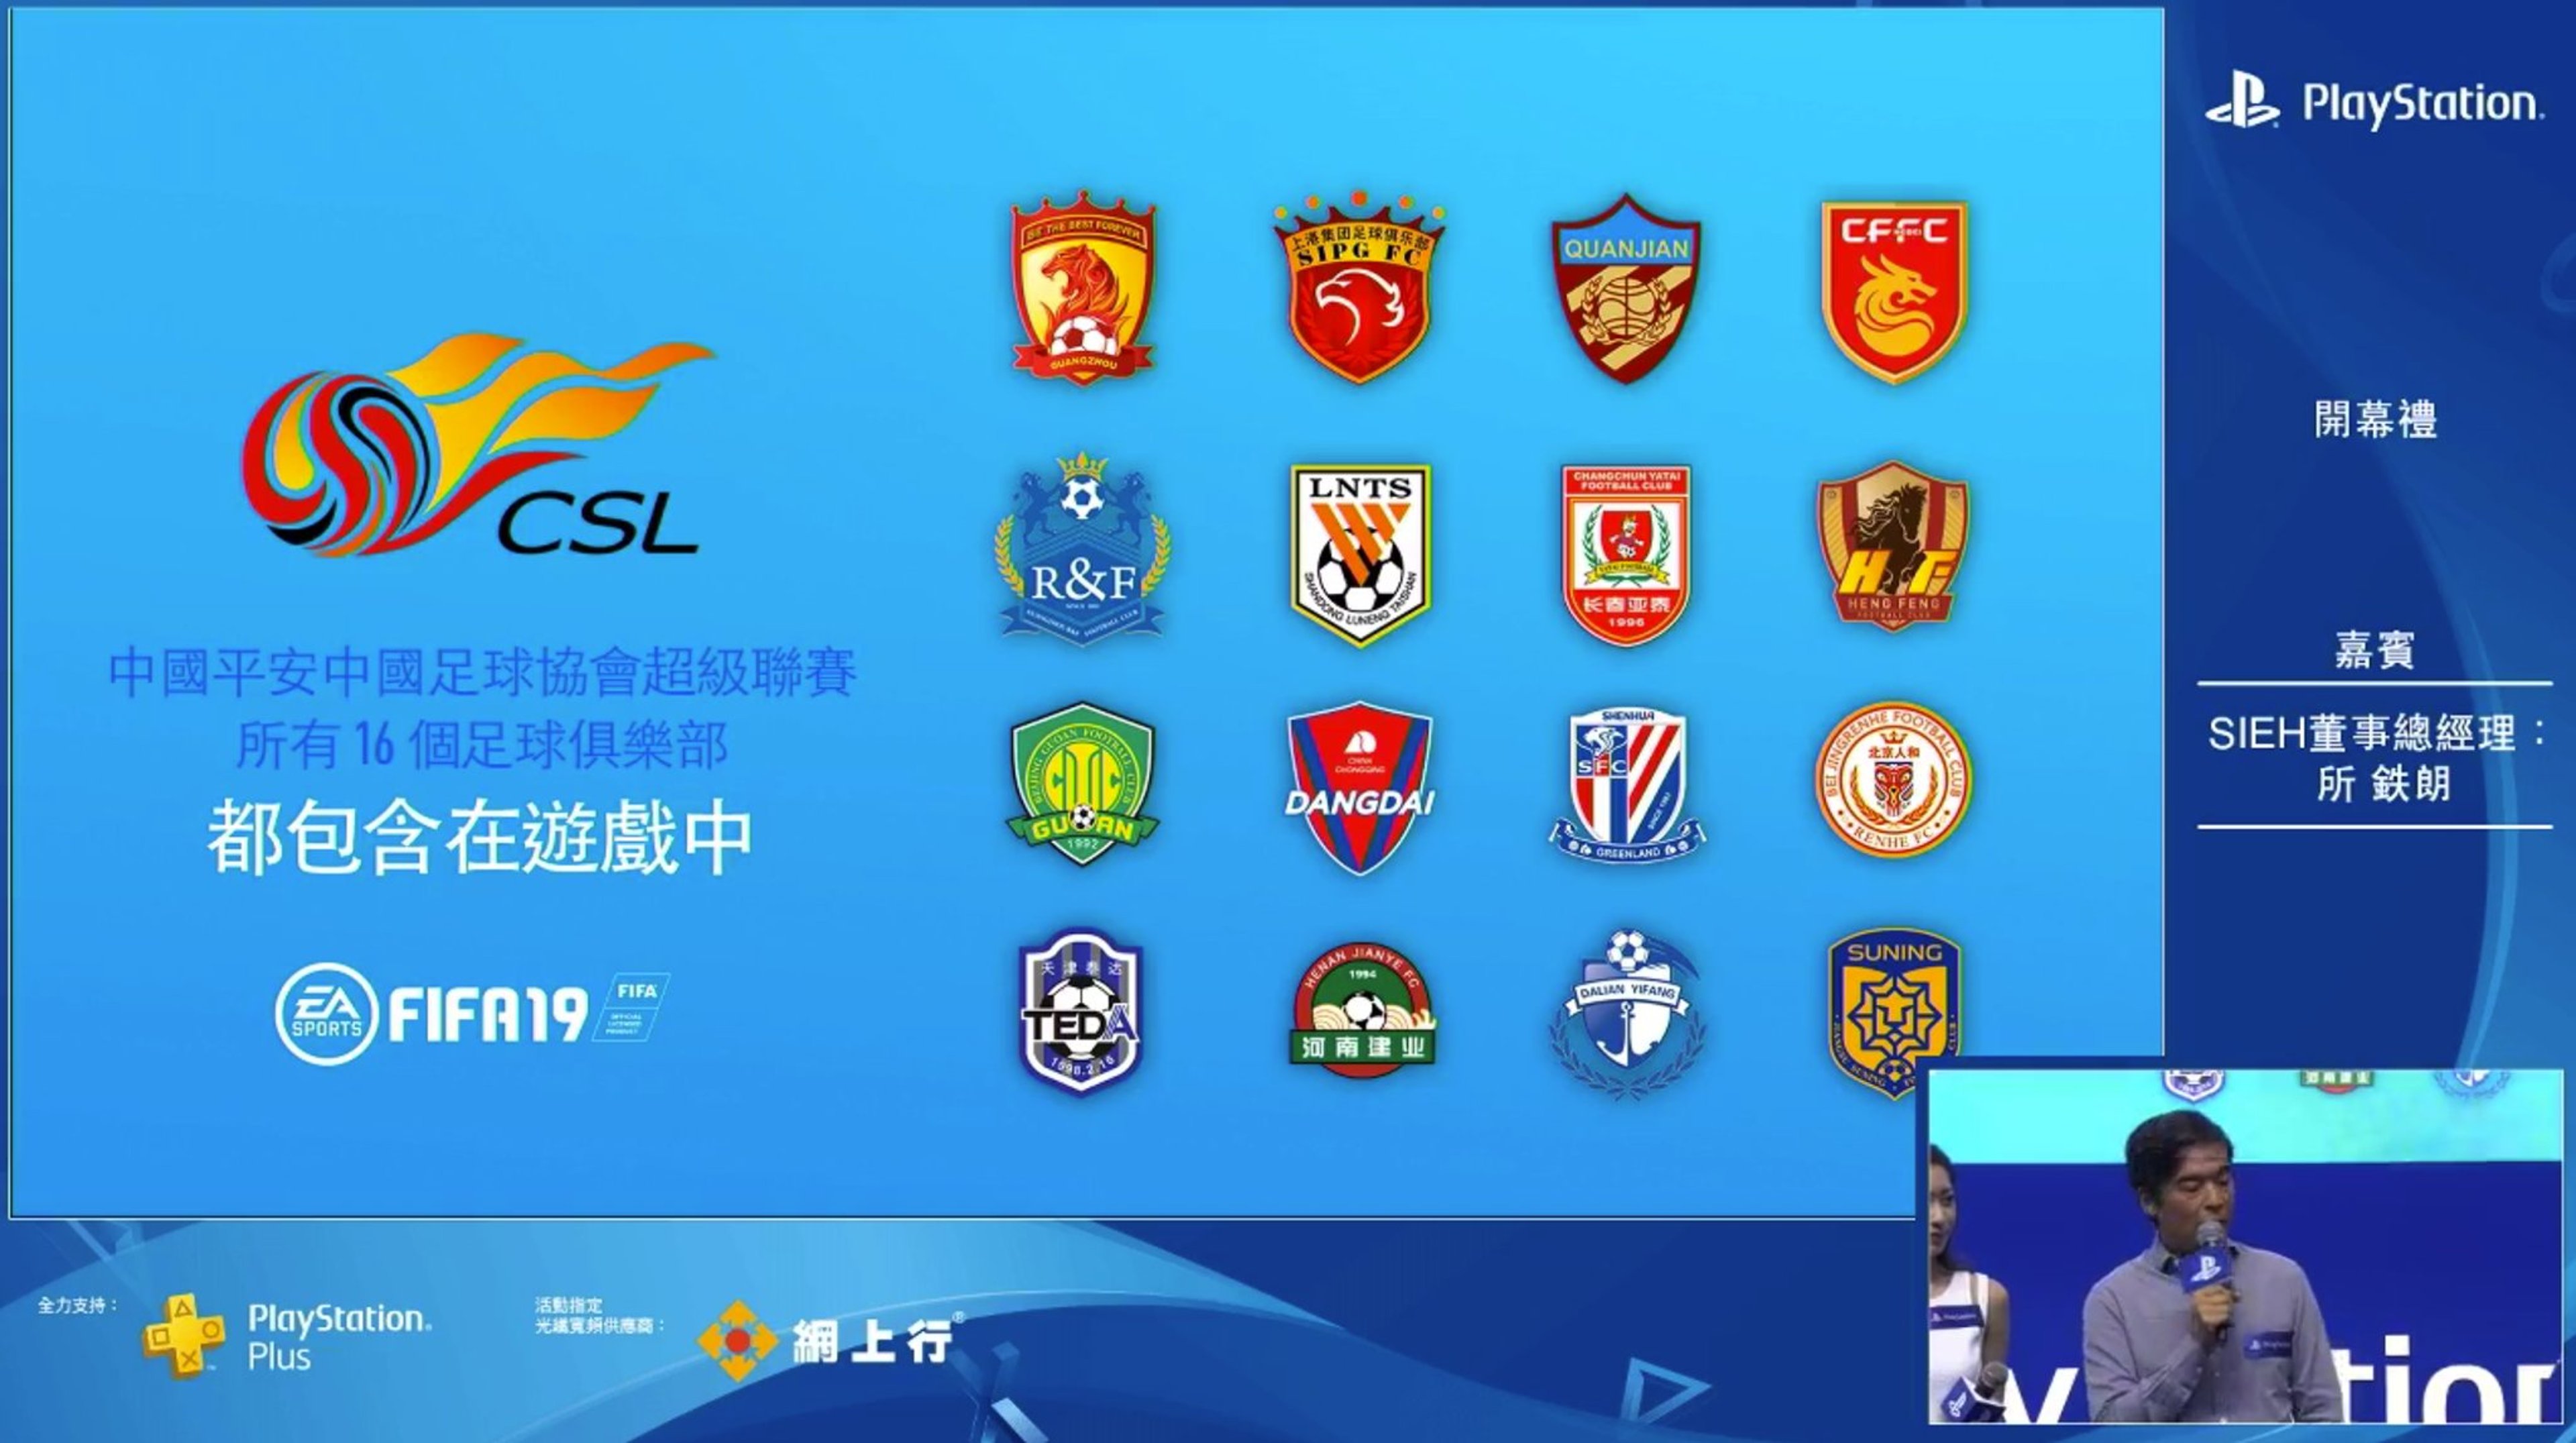 Ufficiale: il campionato cinese sarà presente in Fifa 19